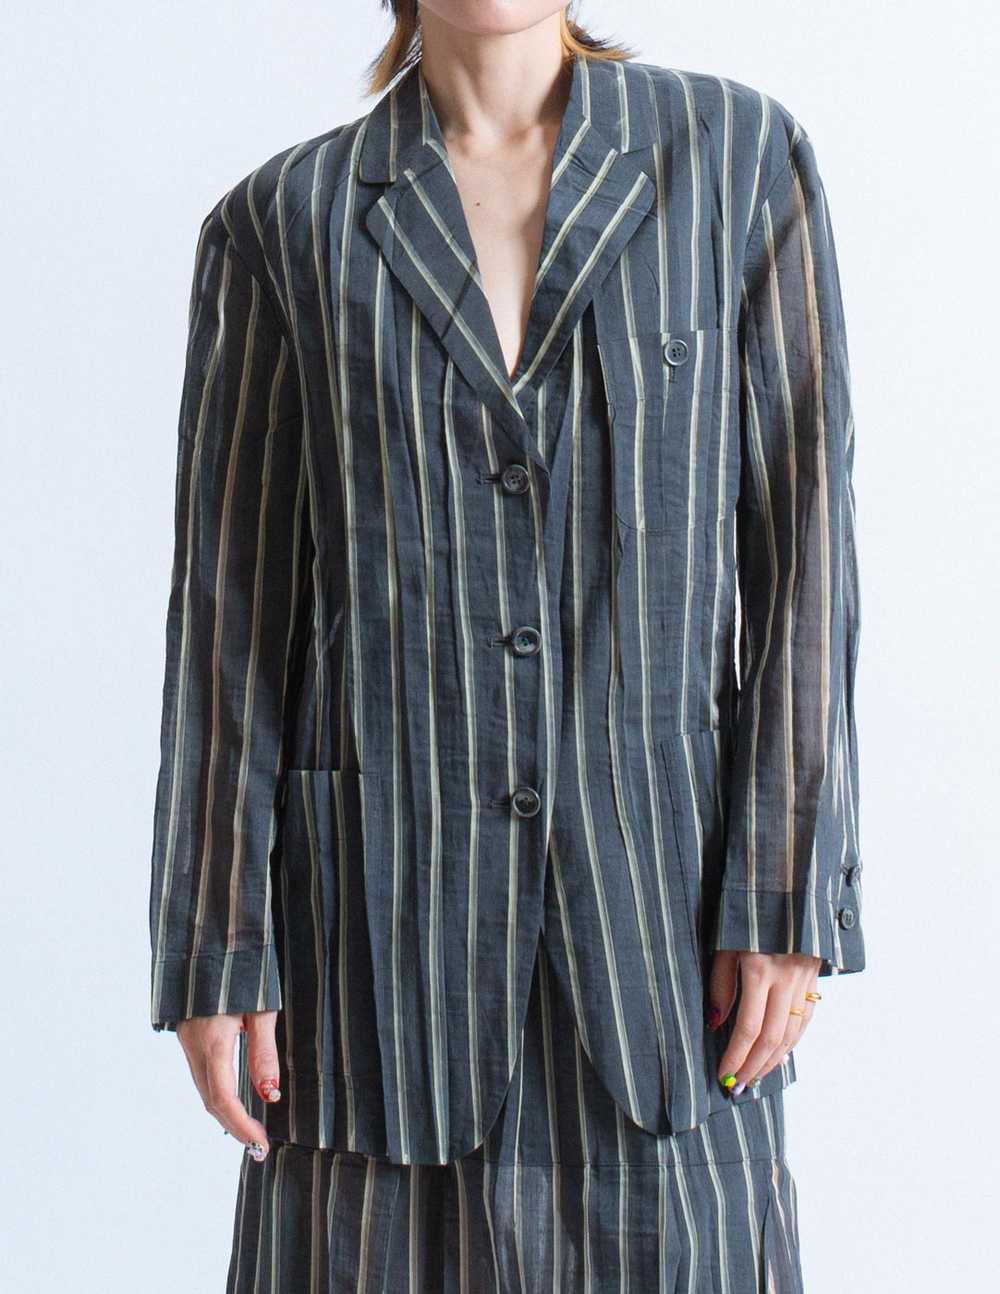 Issey Miyake vintage sheer striped wool blazer - image 5